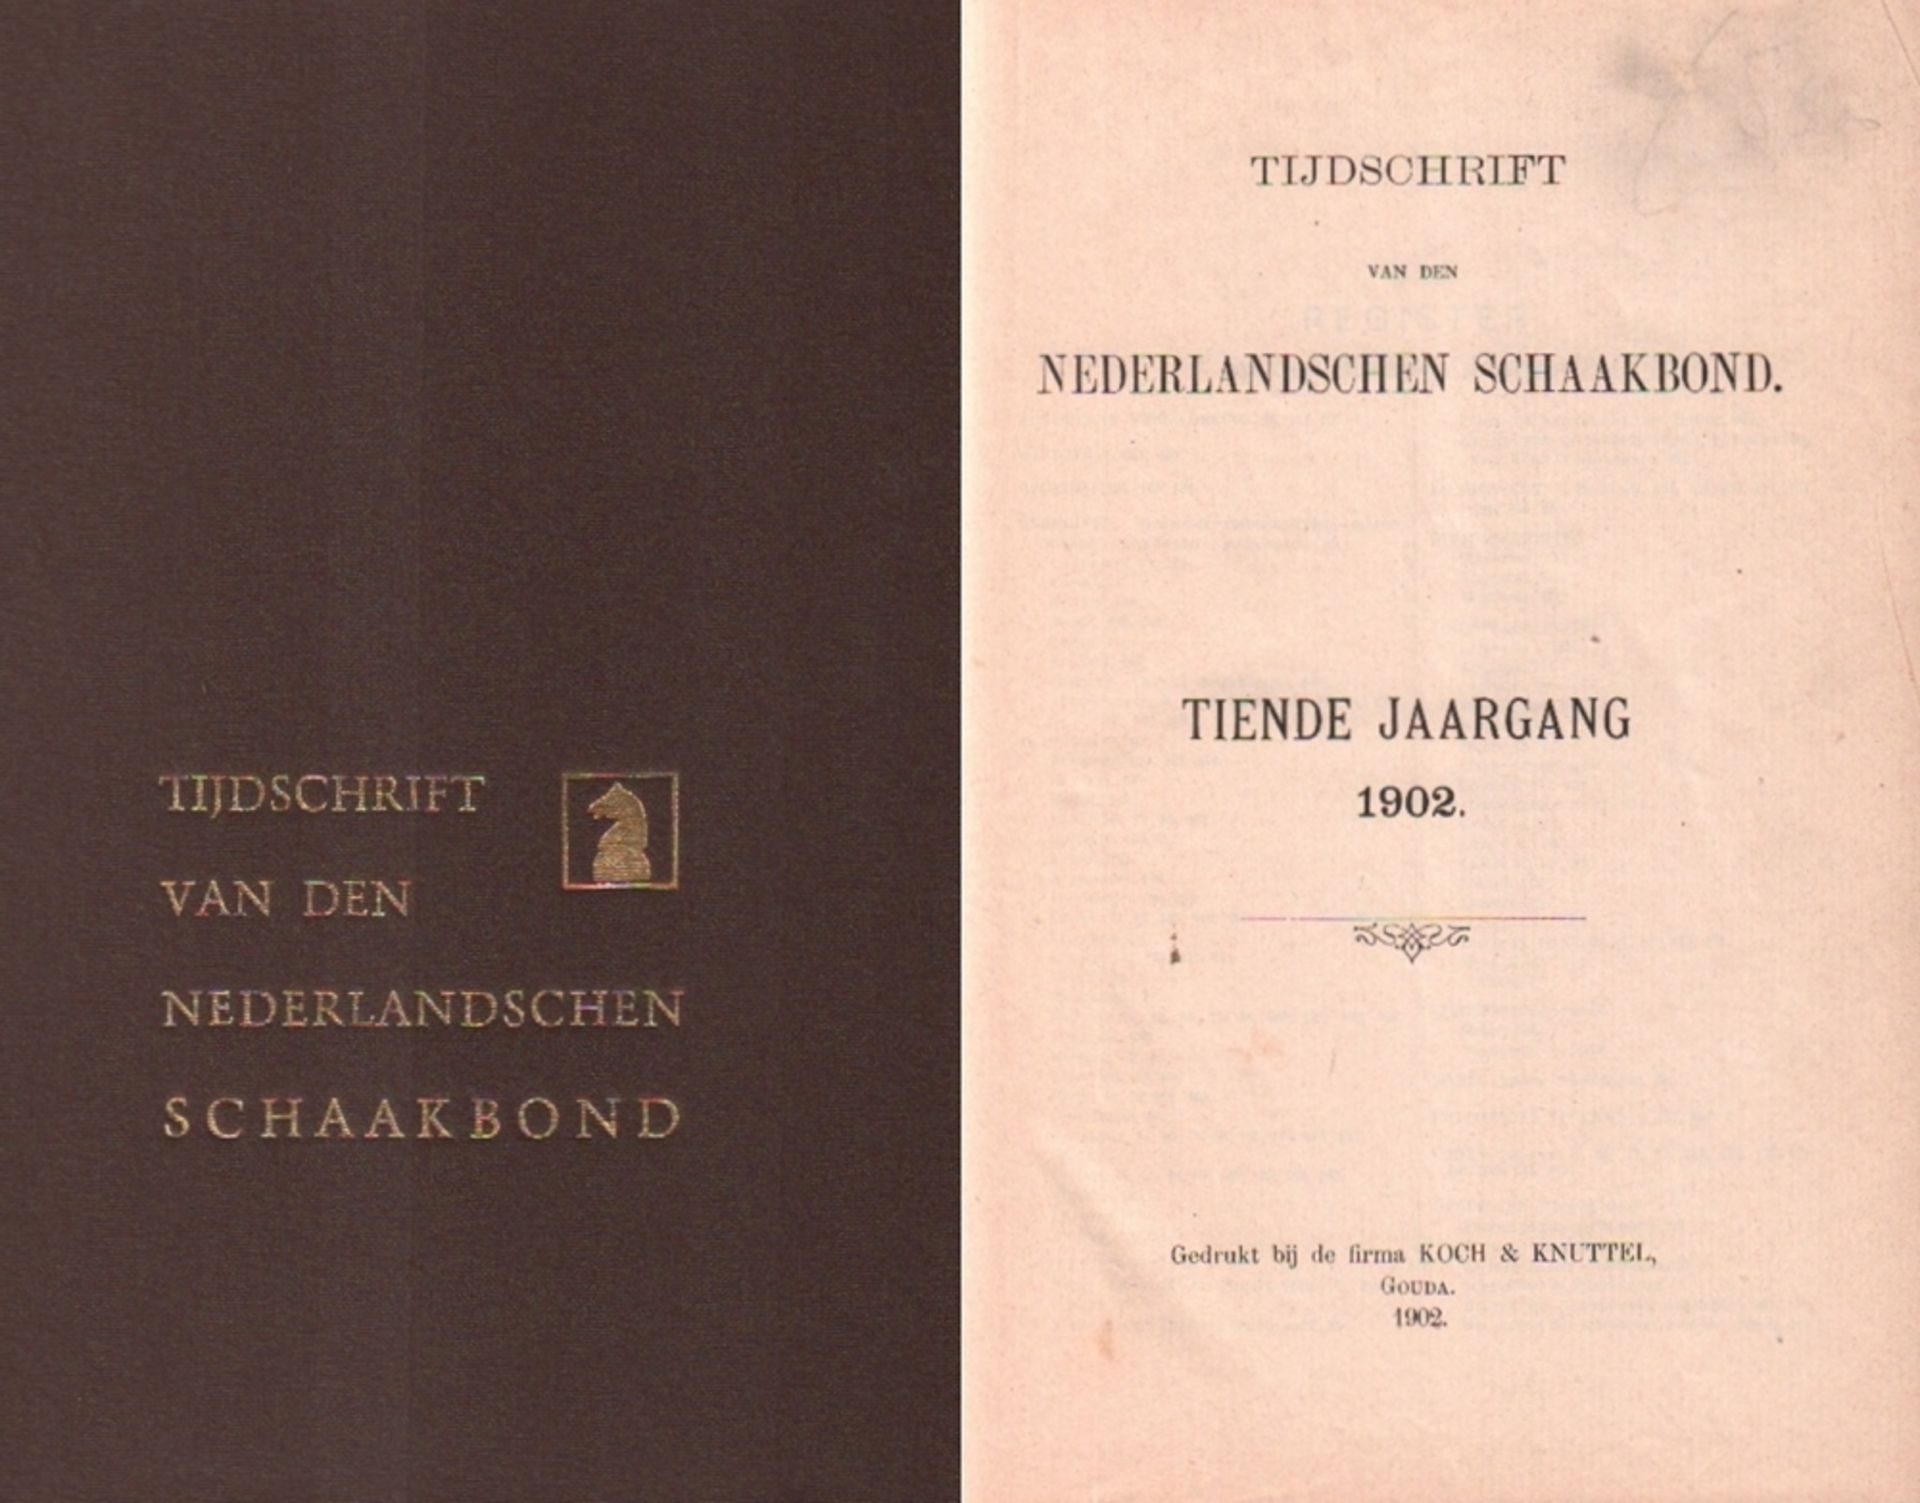 Tijdschrift van den Nederlandschen Schaakbond. Redactie van J. W. te Kolsté u. a. 10. Jahrgang 1902.